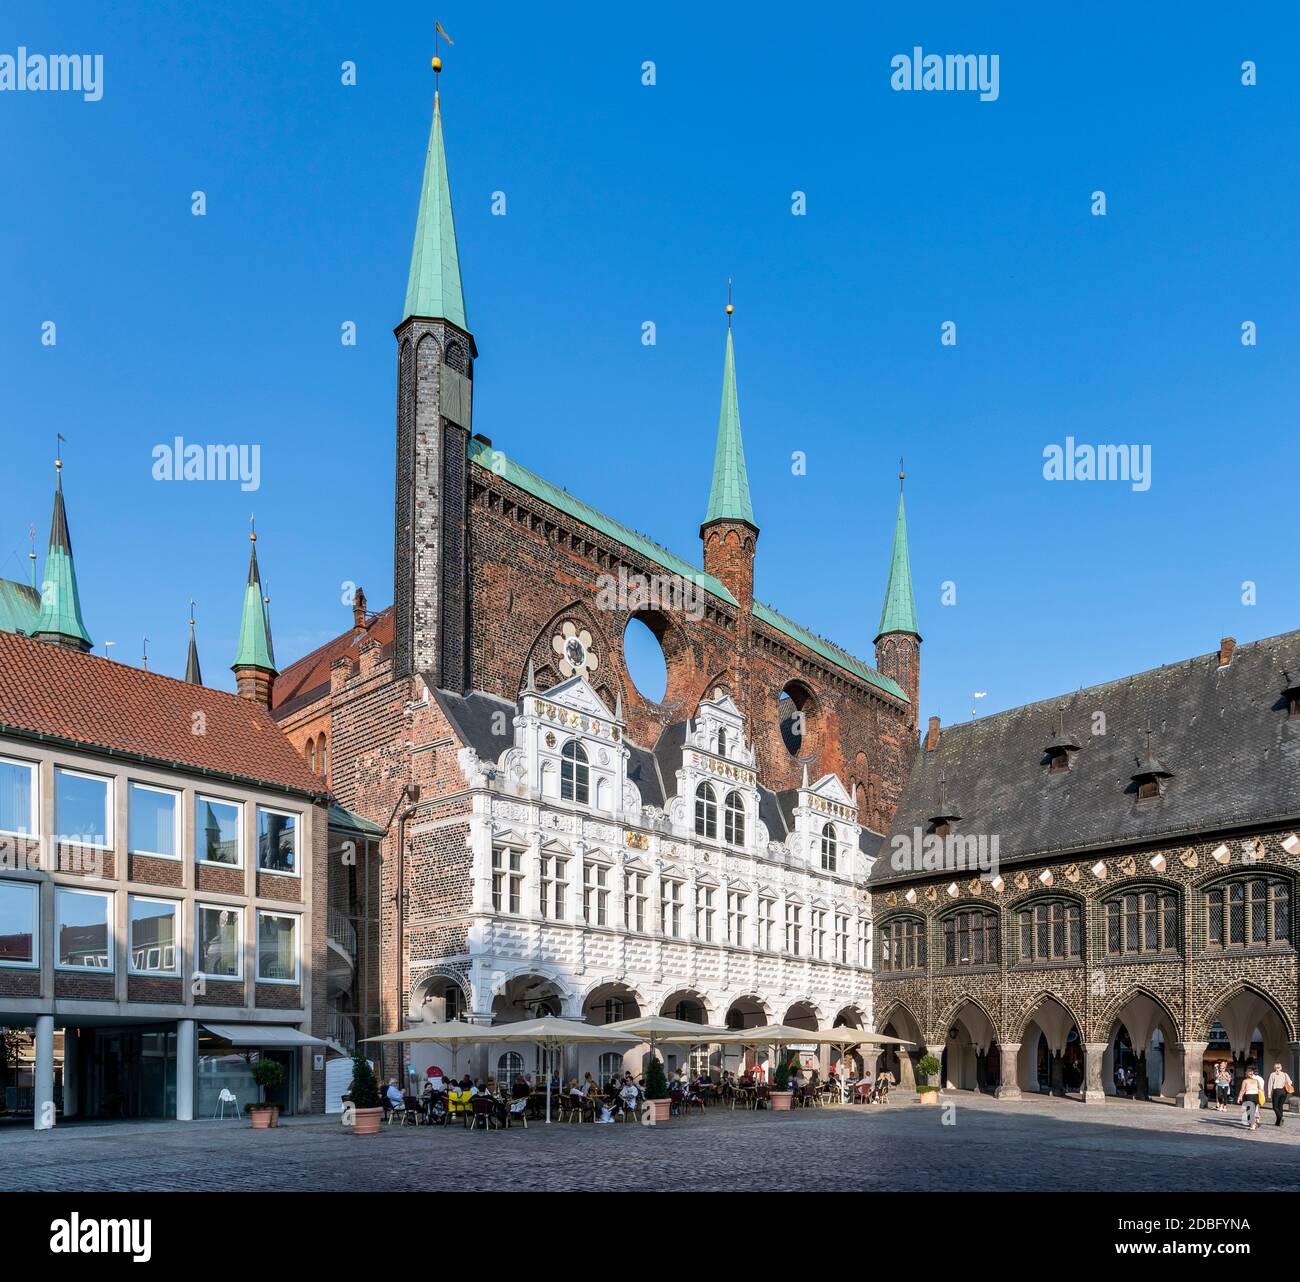 Stadtverwaltung Hansestadt Lübeck. Questo municipio del 1226 ha edifici ad arco decorati, in stili dal gotico al Rinascimento - più buchi di vento anche! Foto Stock